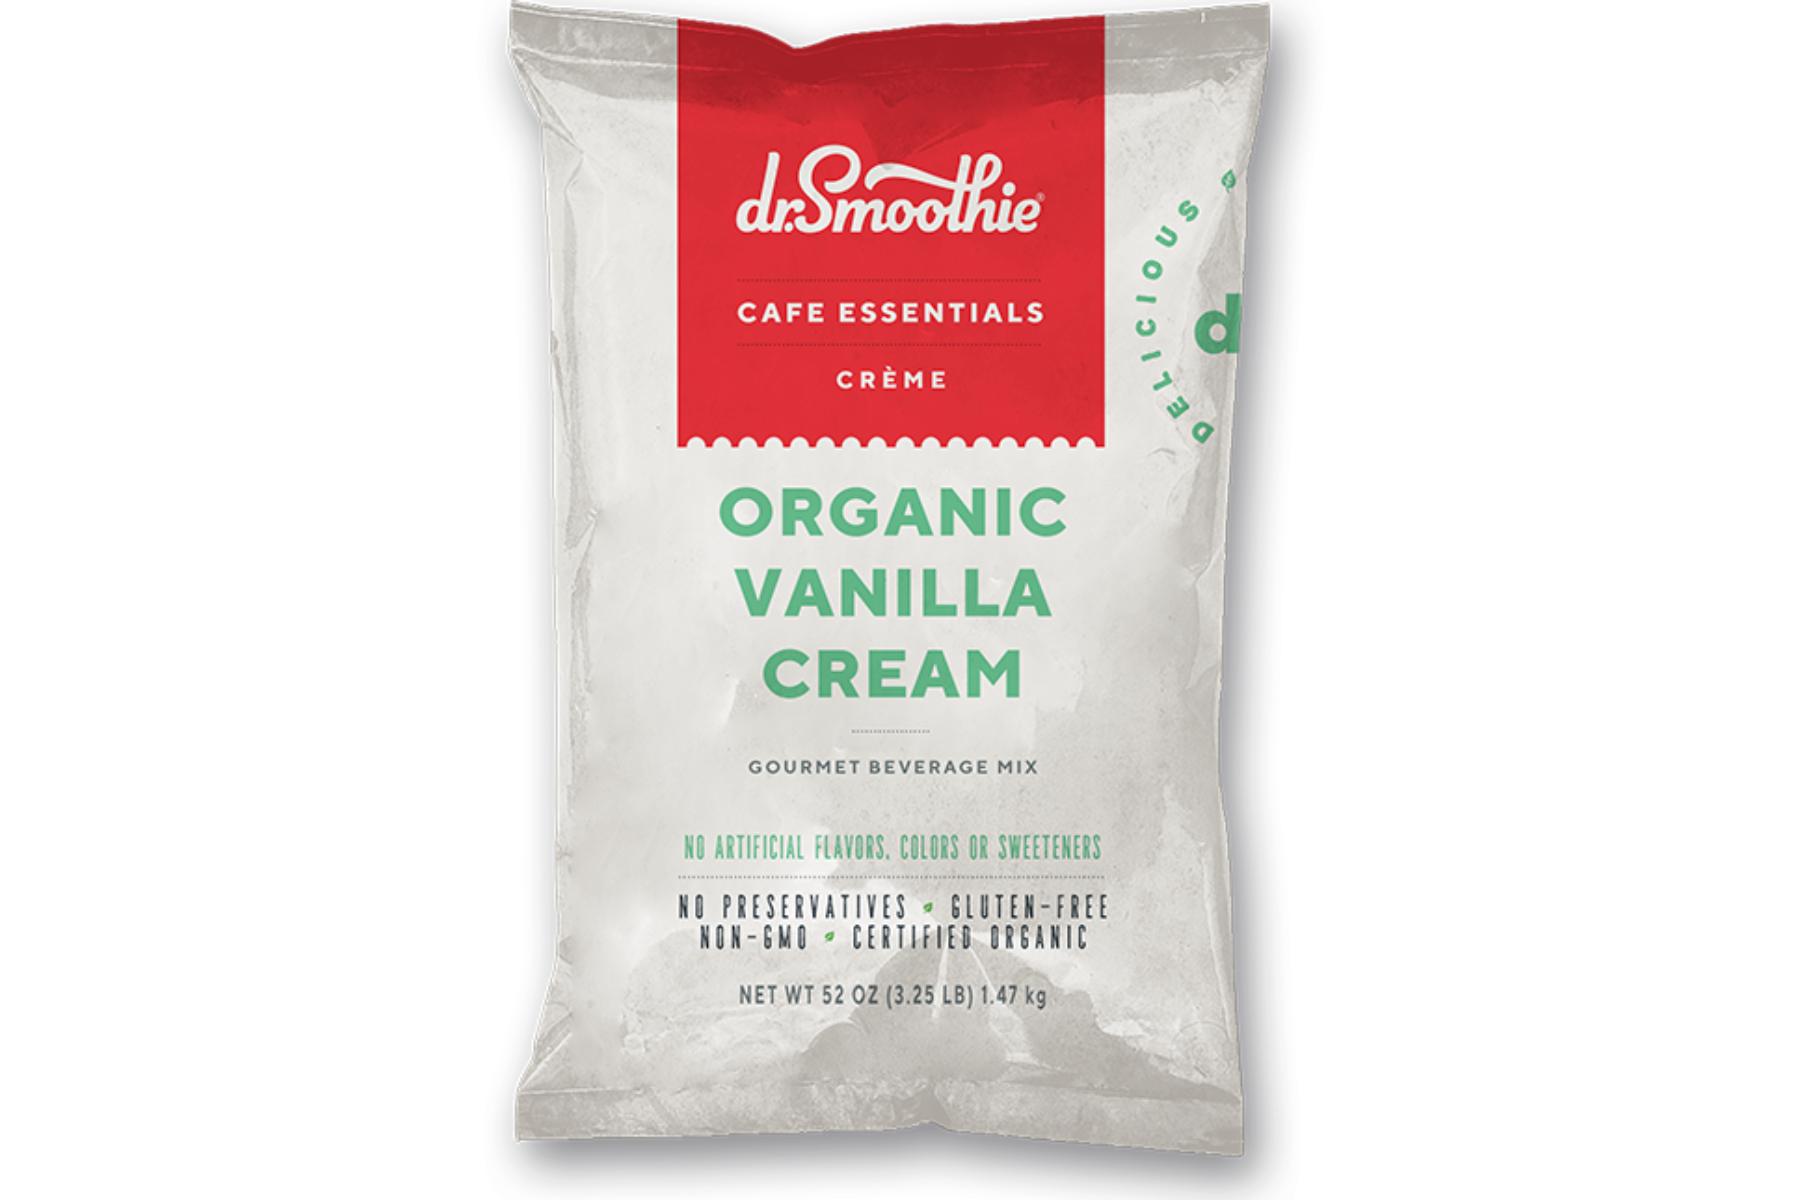 Dr. Smoothie Cafe Essentials Creme - 3.5lb Bulk Bag: Organic Vanilla Cream